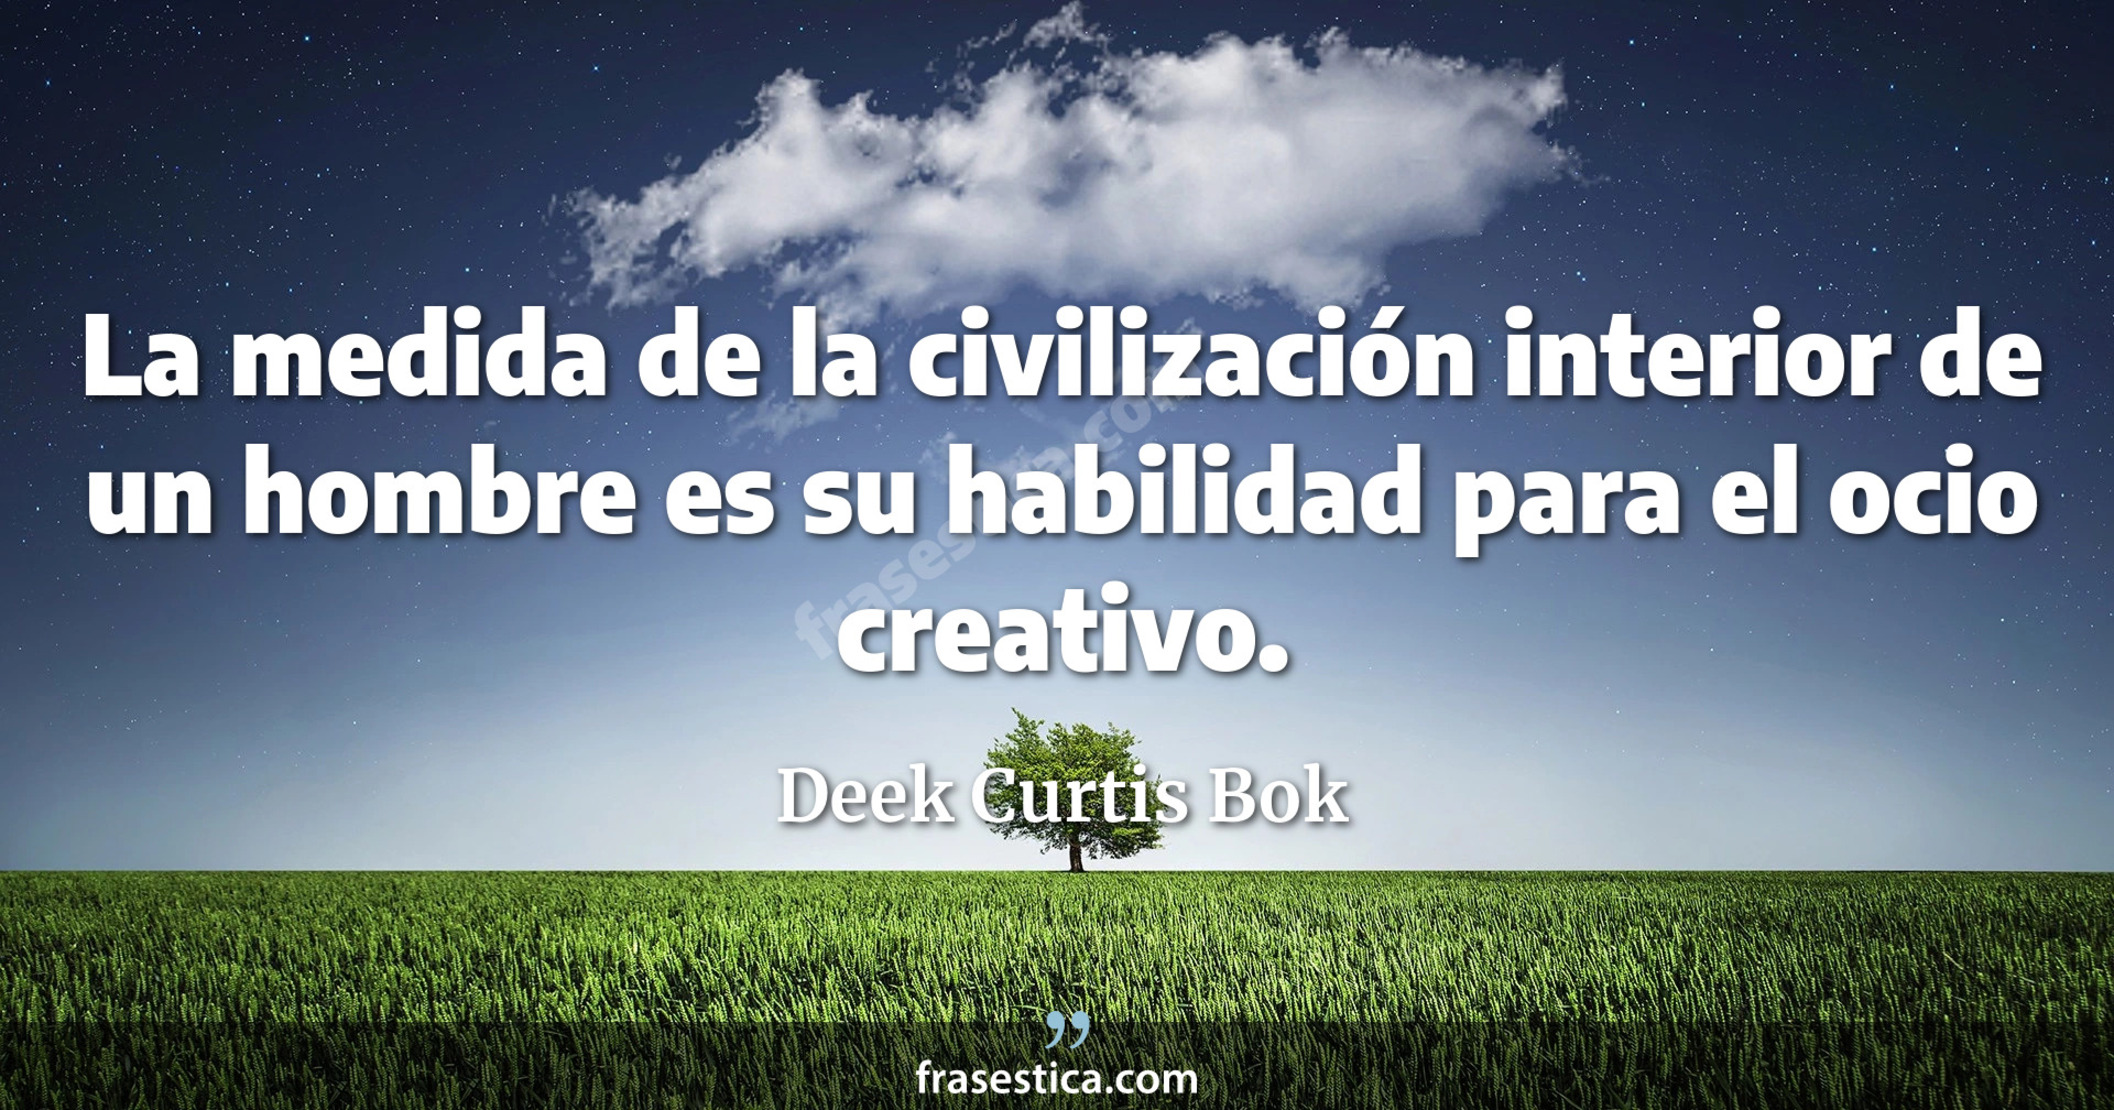 La medida de la civilización interior de un hombre es su habilidad para el ocio creativo. - Deek Curtis Bok